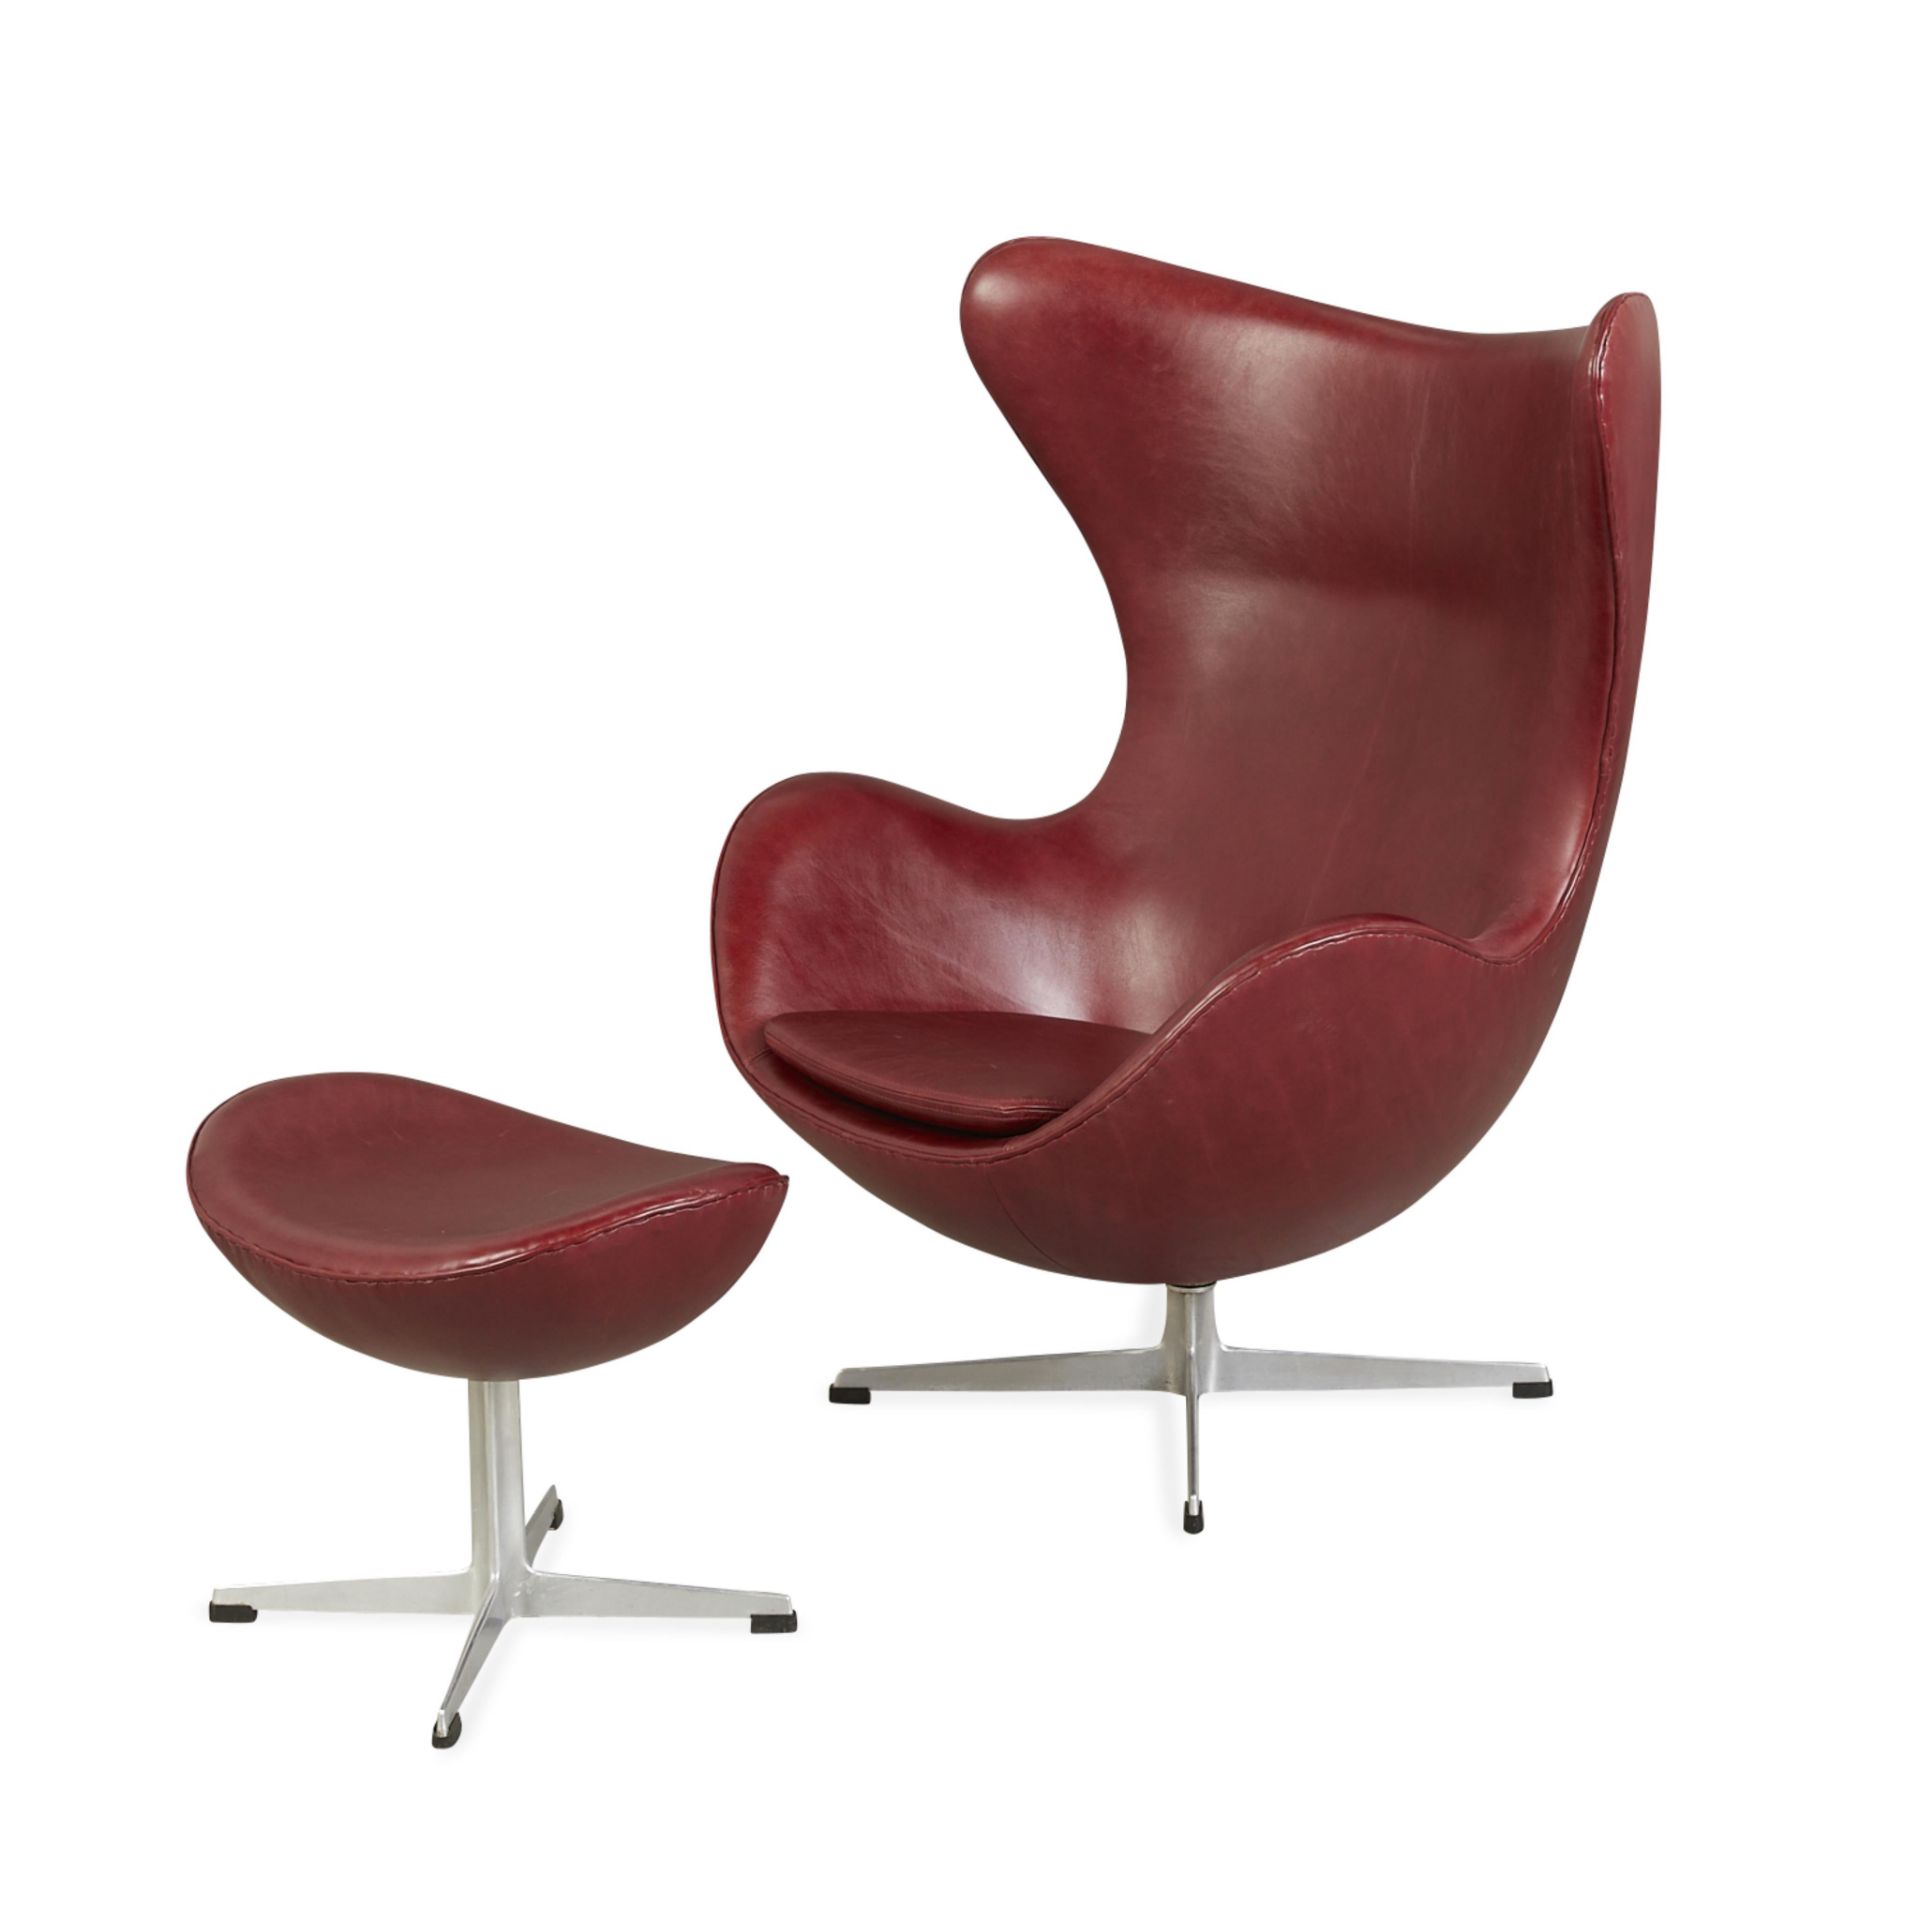 Arne Jacobsen for Hansen Leather Egg Chair 1964